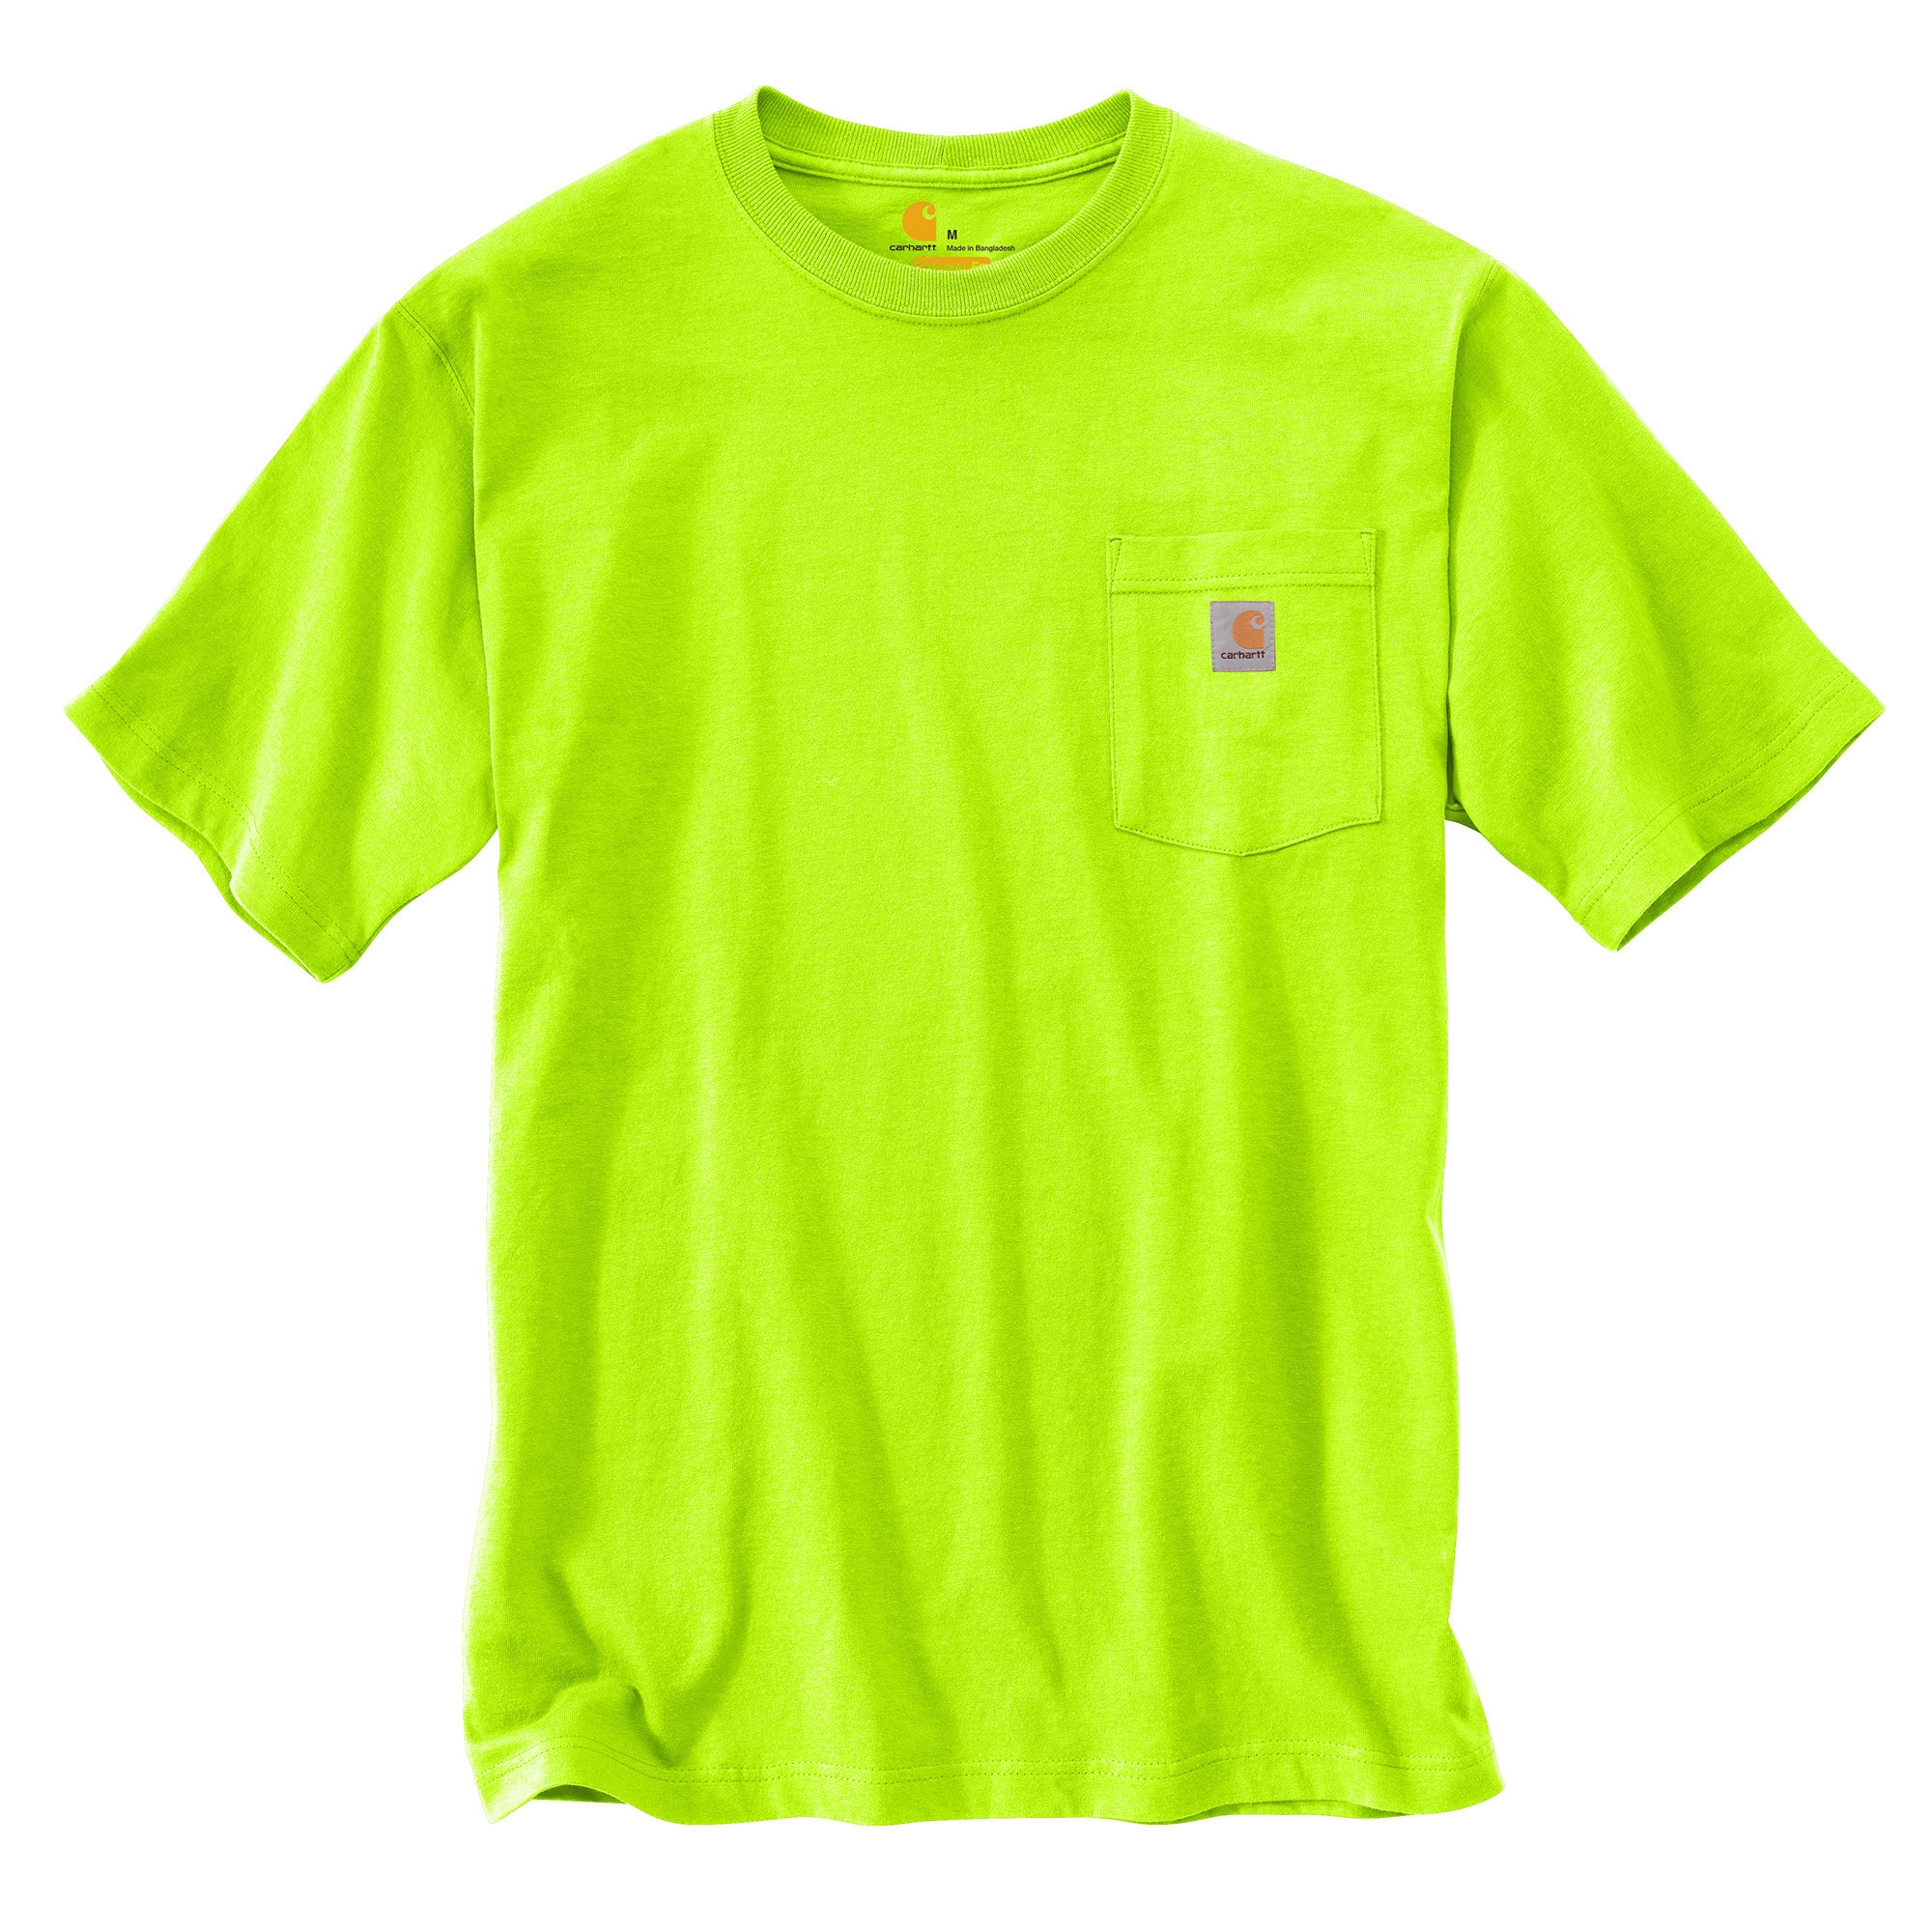 Product Detail - Carhartt Cotton Short Sleeve T-Shirt